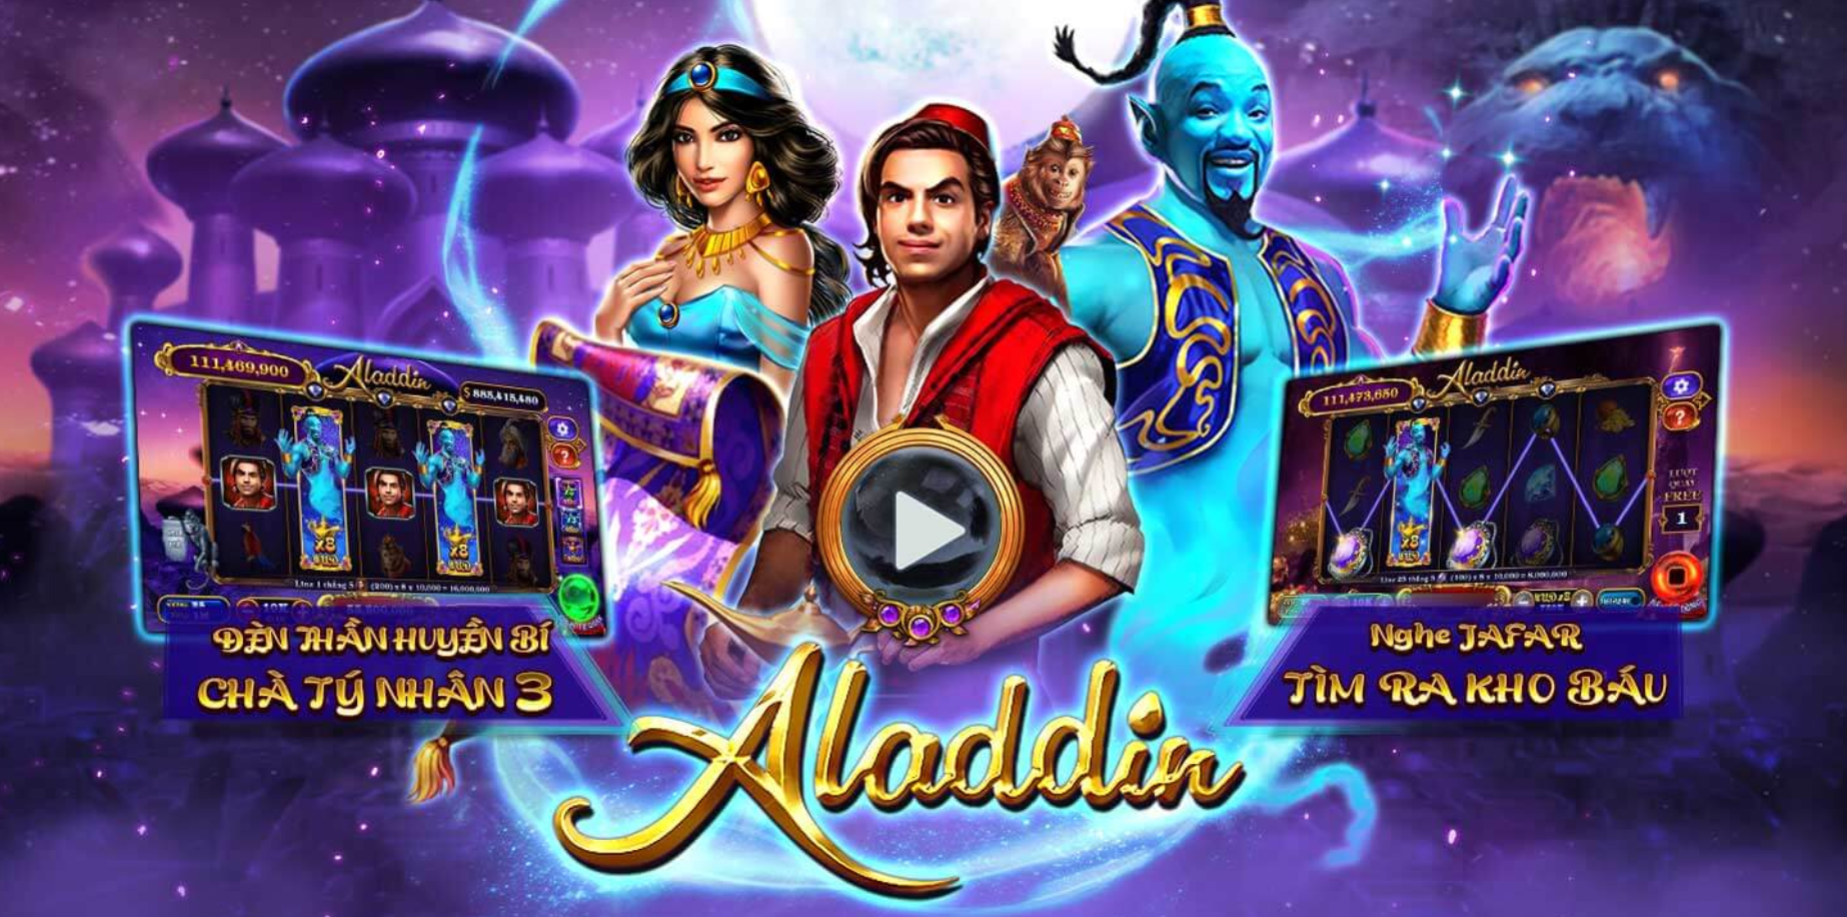 Chiến thuật chơi nổ hũ Aladdin ăn tiền từ cao thủ 